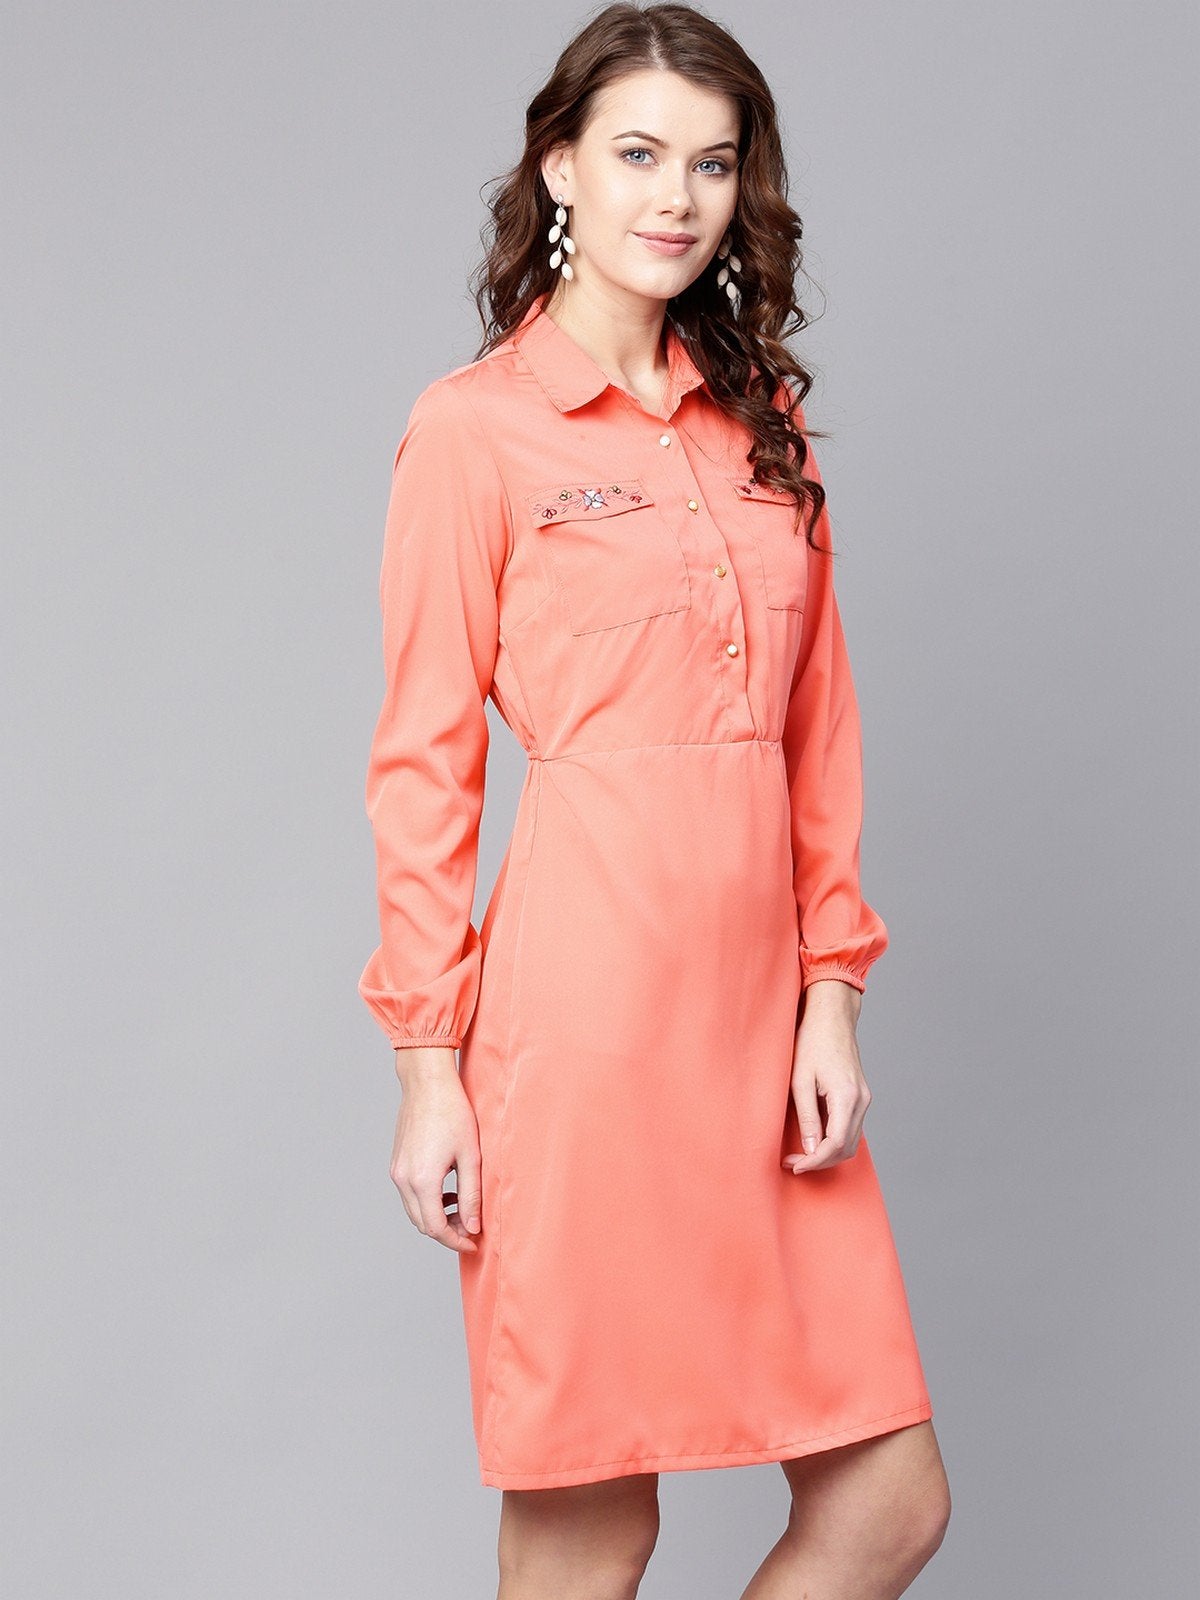 Women's Embroidered Shirt Dress - Pannkh